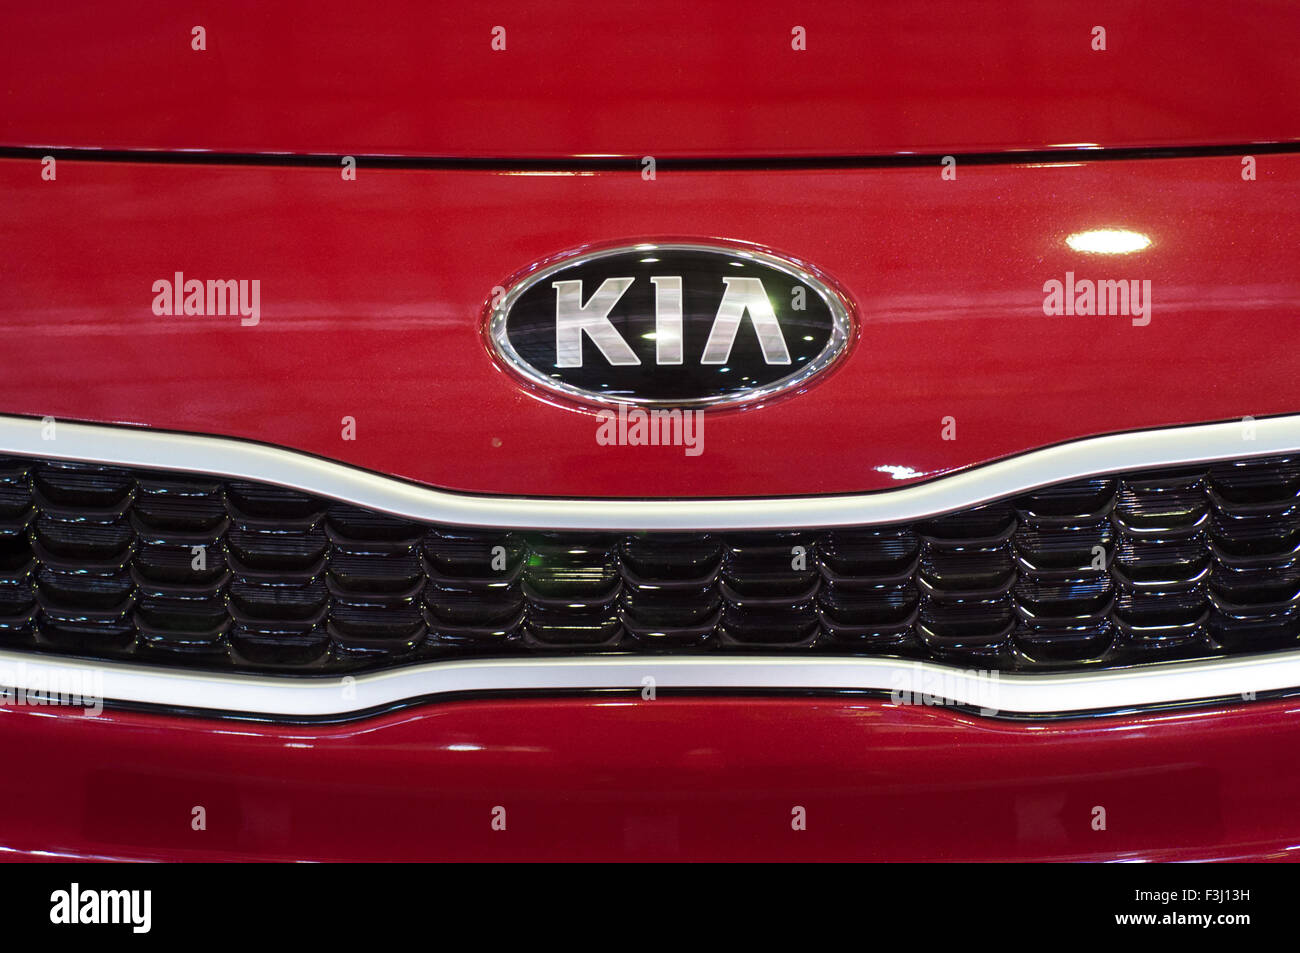 KIA emblem on a car. Stock Photo